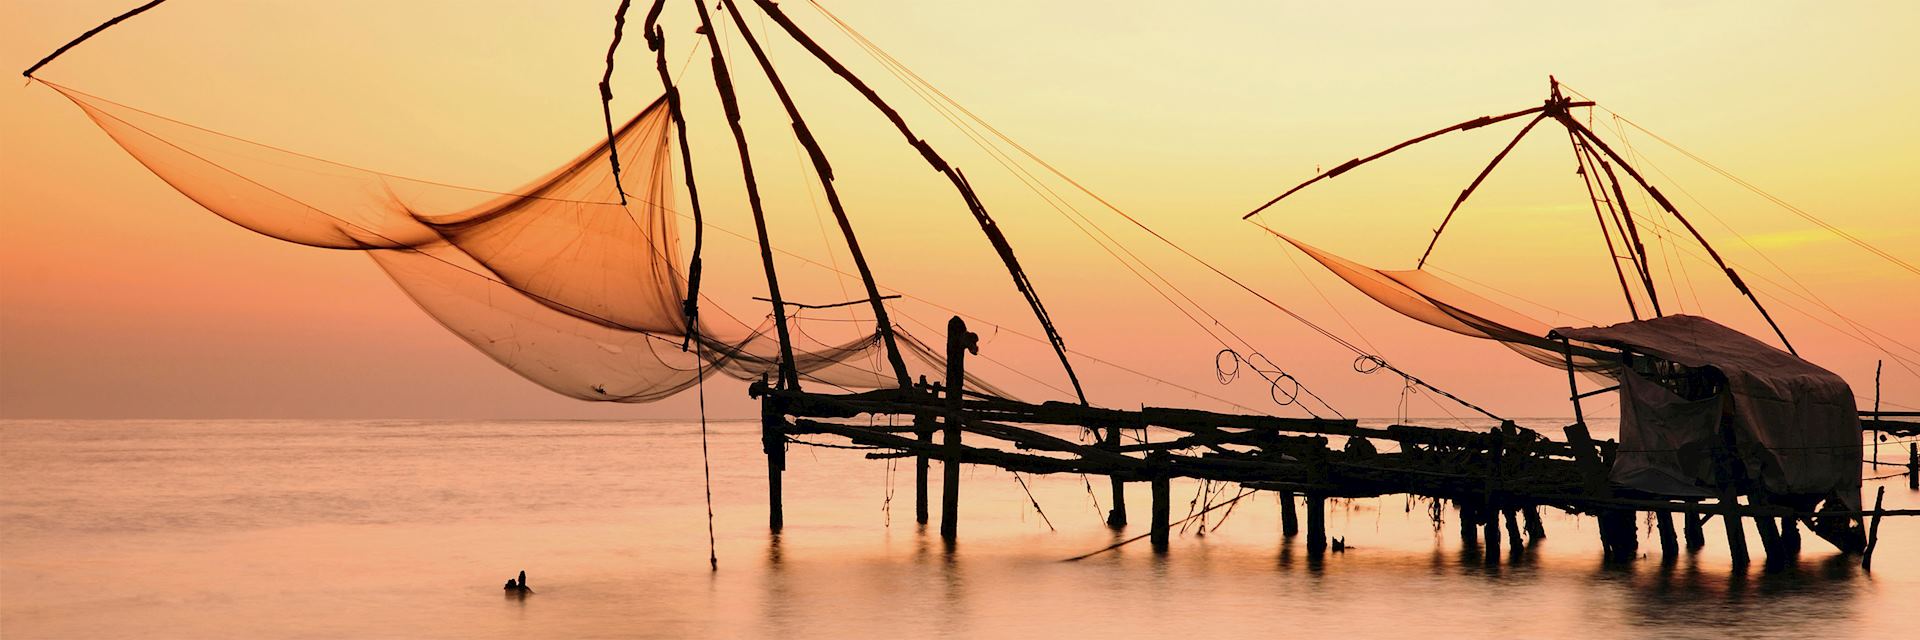 Chinese fishing nets, Kerala